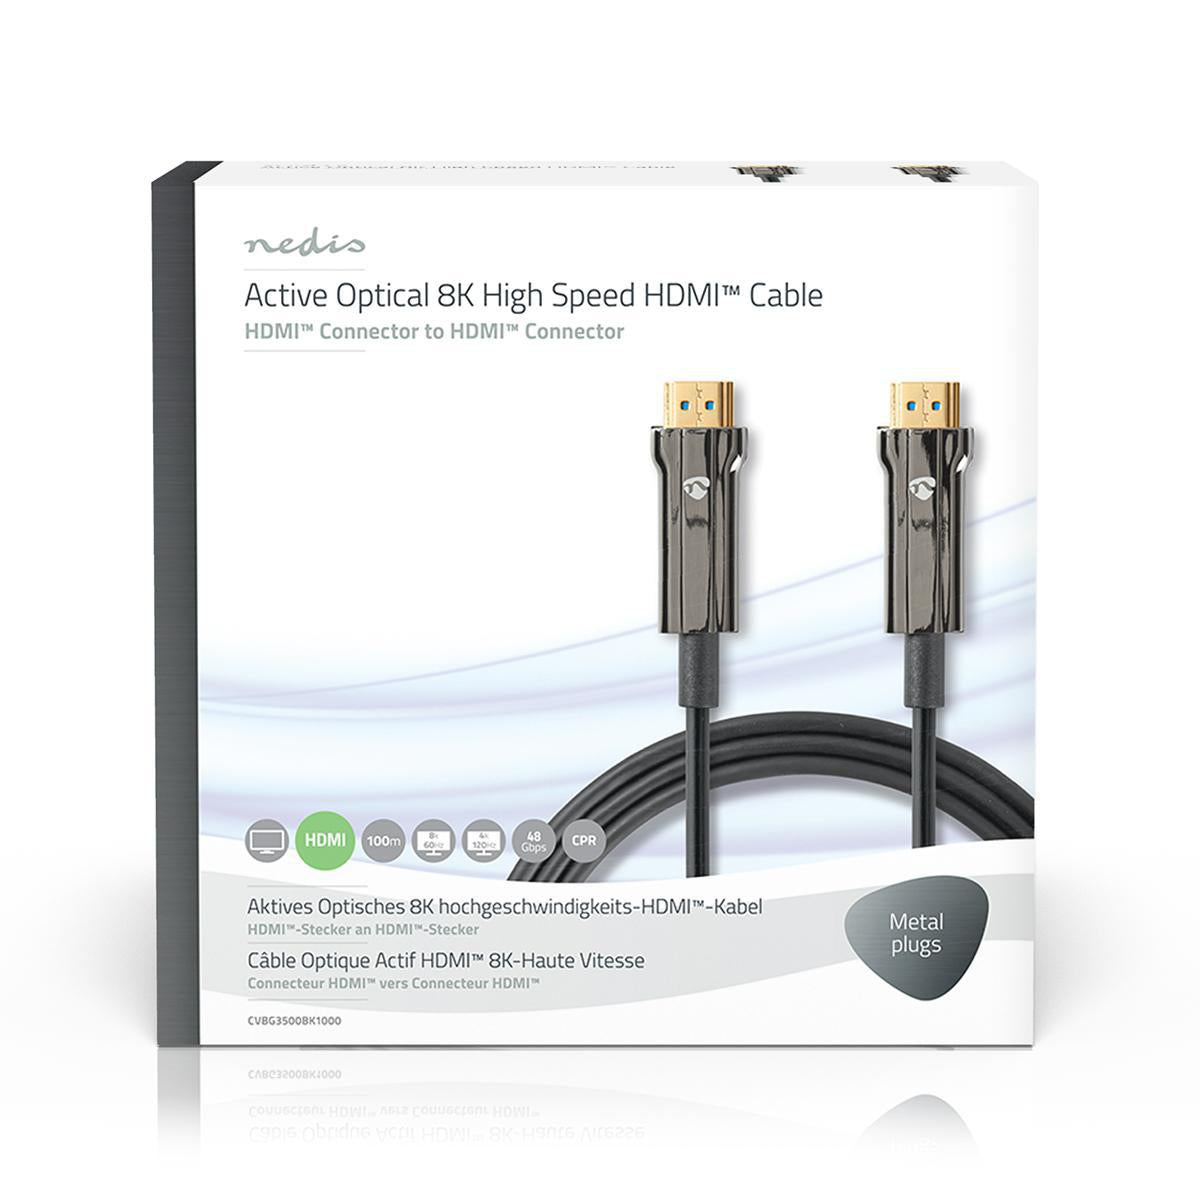 Aktive Optische Ultra High Speed HDMI-Kabel mit Ethernet | HDMI™ Stecker | HDMI™ Stecker | 8K@60Hz | 48 Gbps | 100.0 m | Rund | PVC | Schwarz | Kartonverpackung